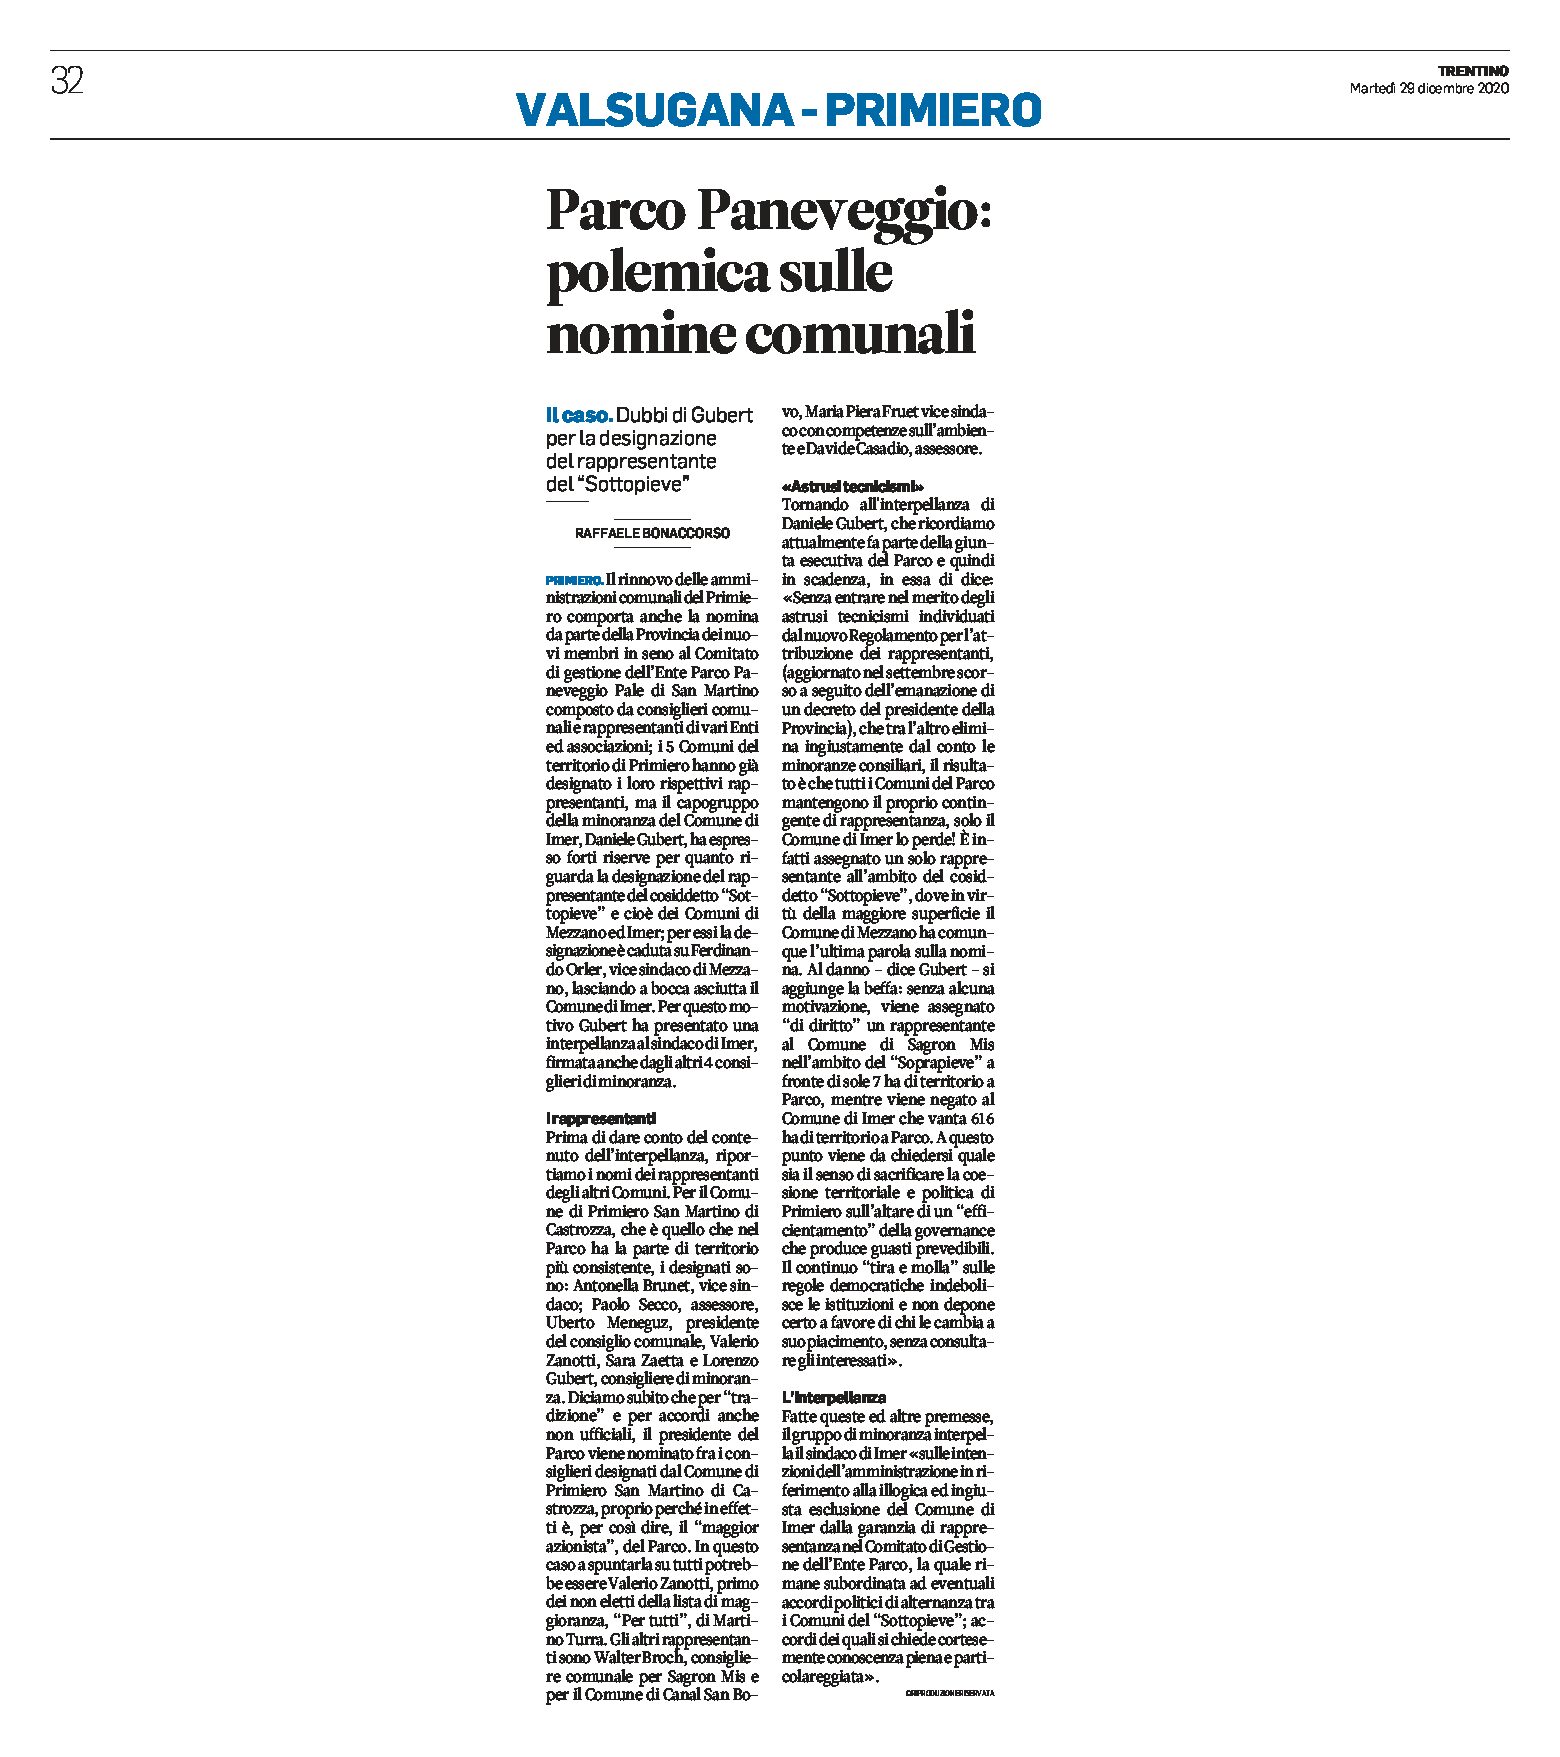 Parco Paneveggio: polemica sulle nomine comunali